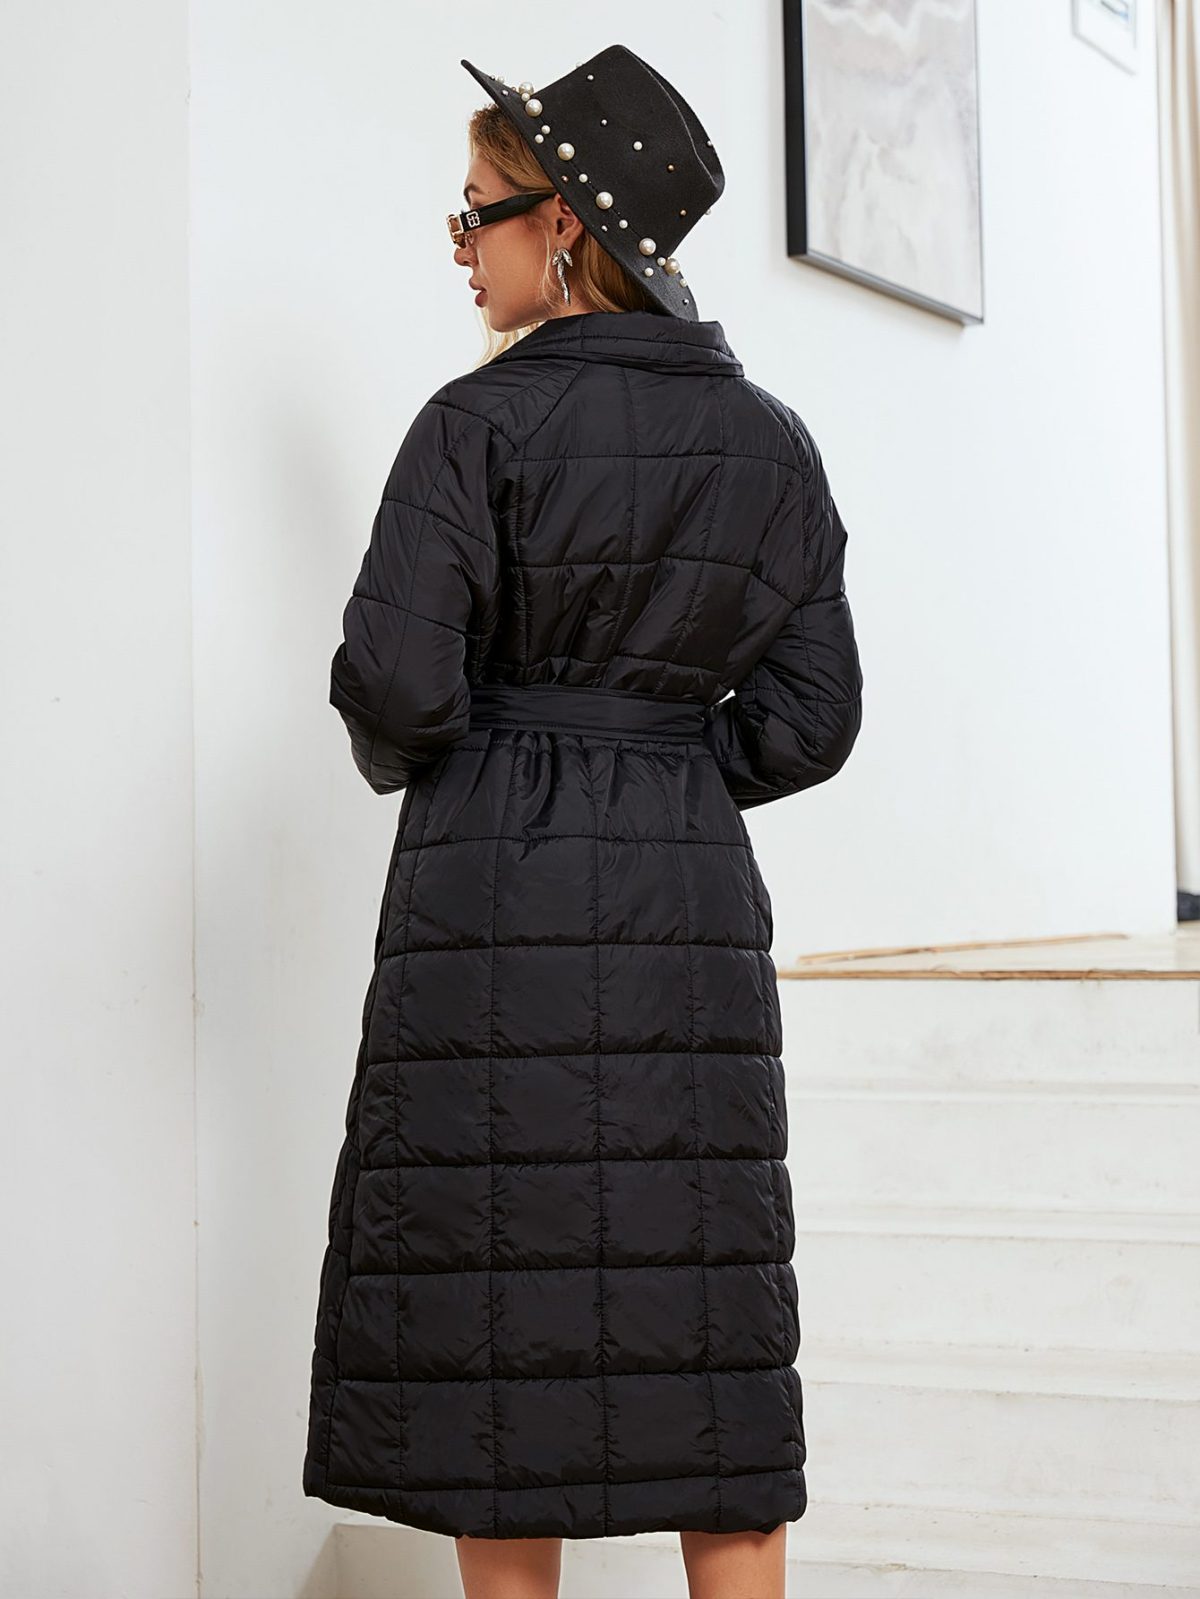 Elegant Black Plaid Puffer Long Quilted Coat - Coats & Jackets - Uniqistic.com